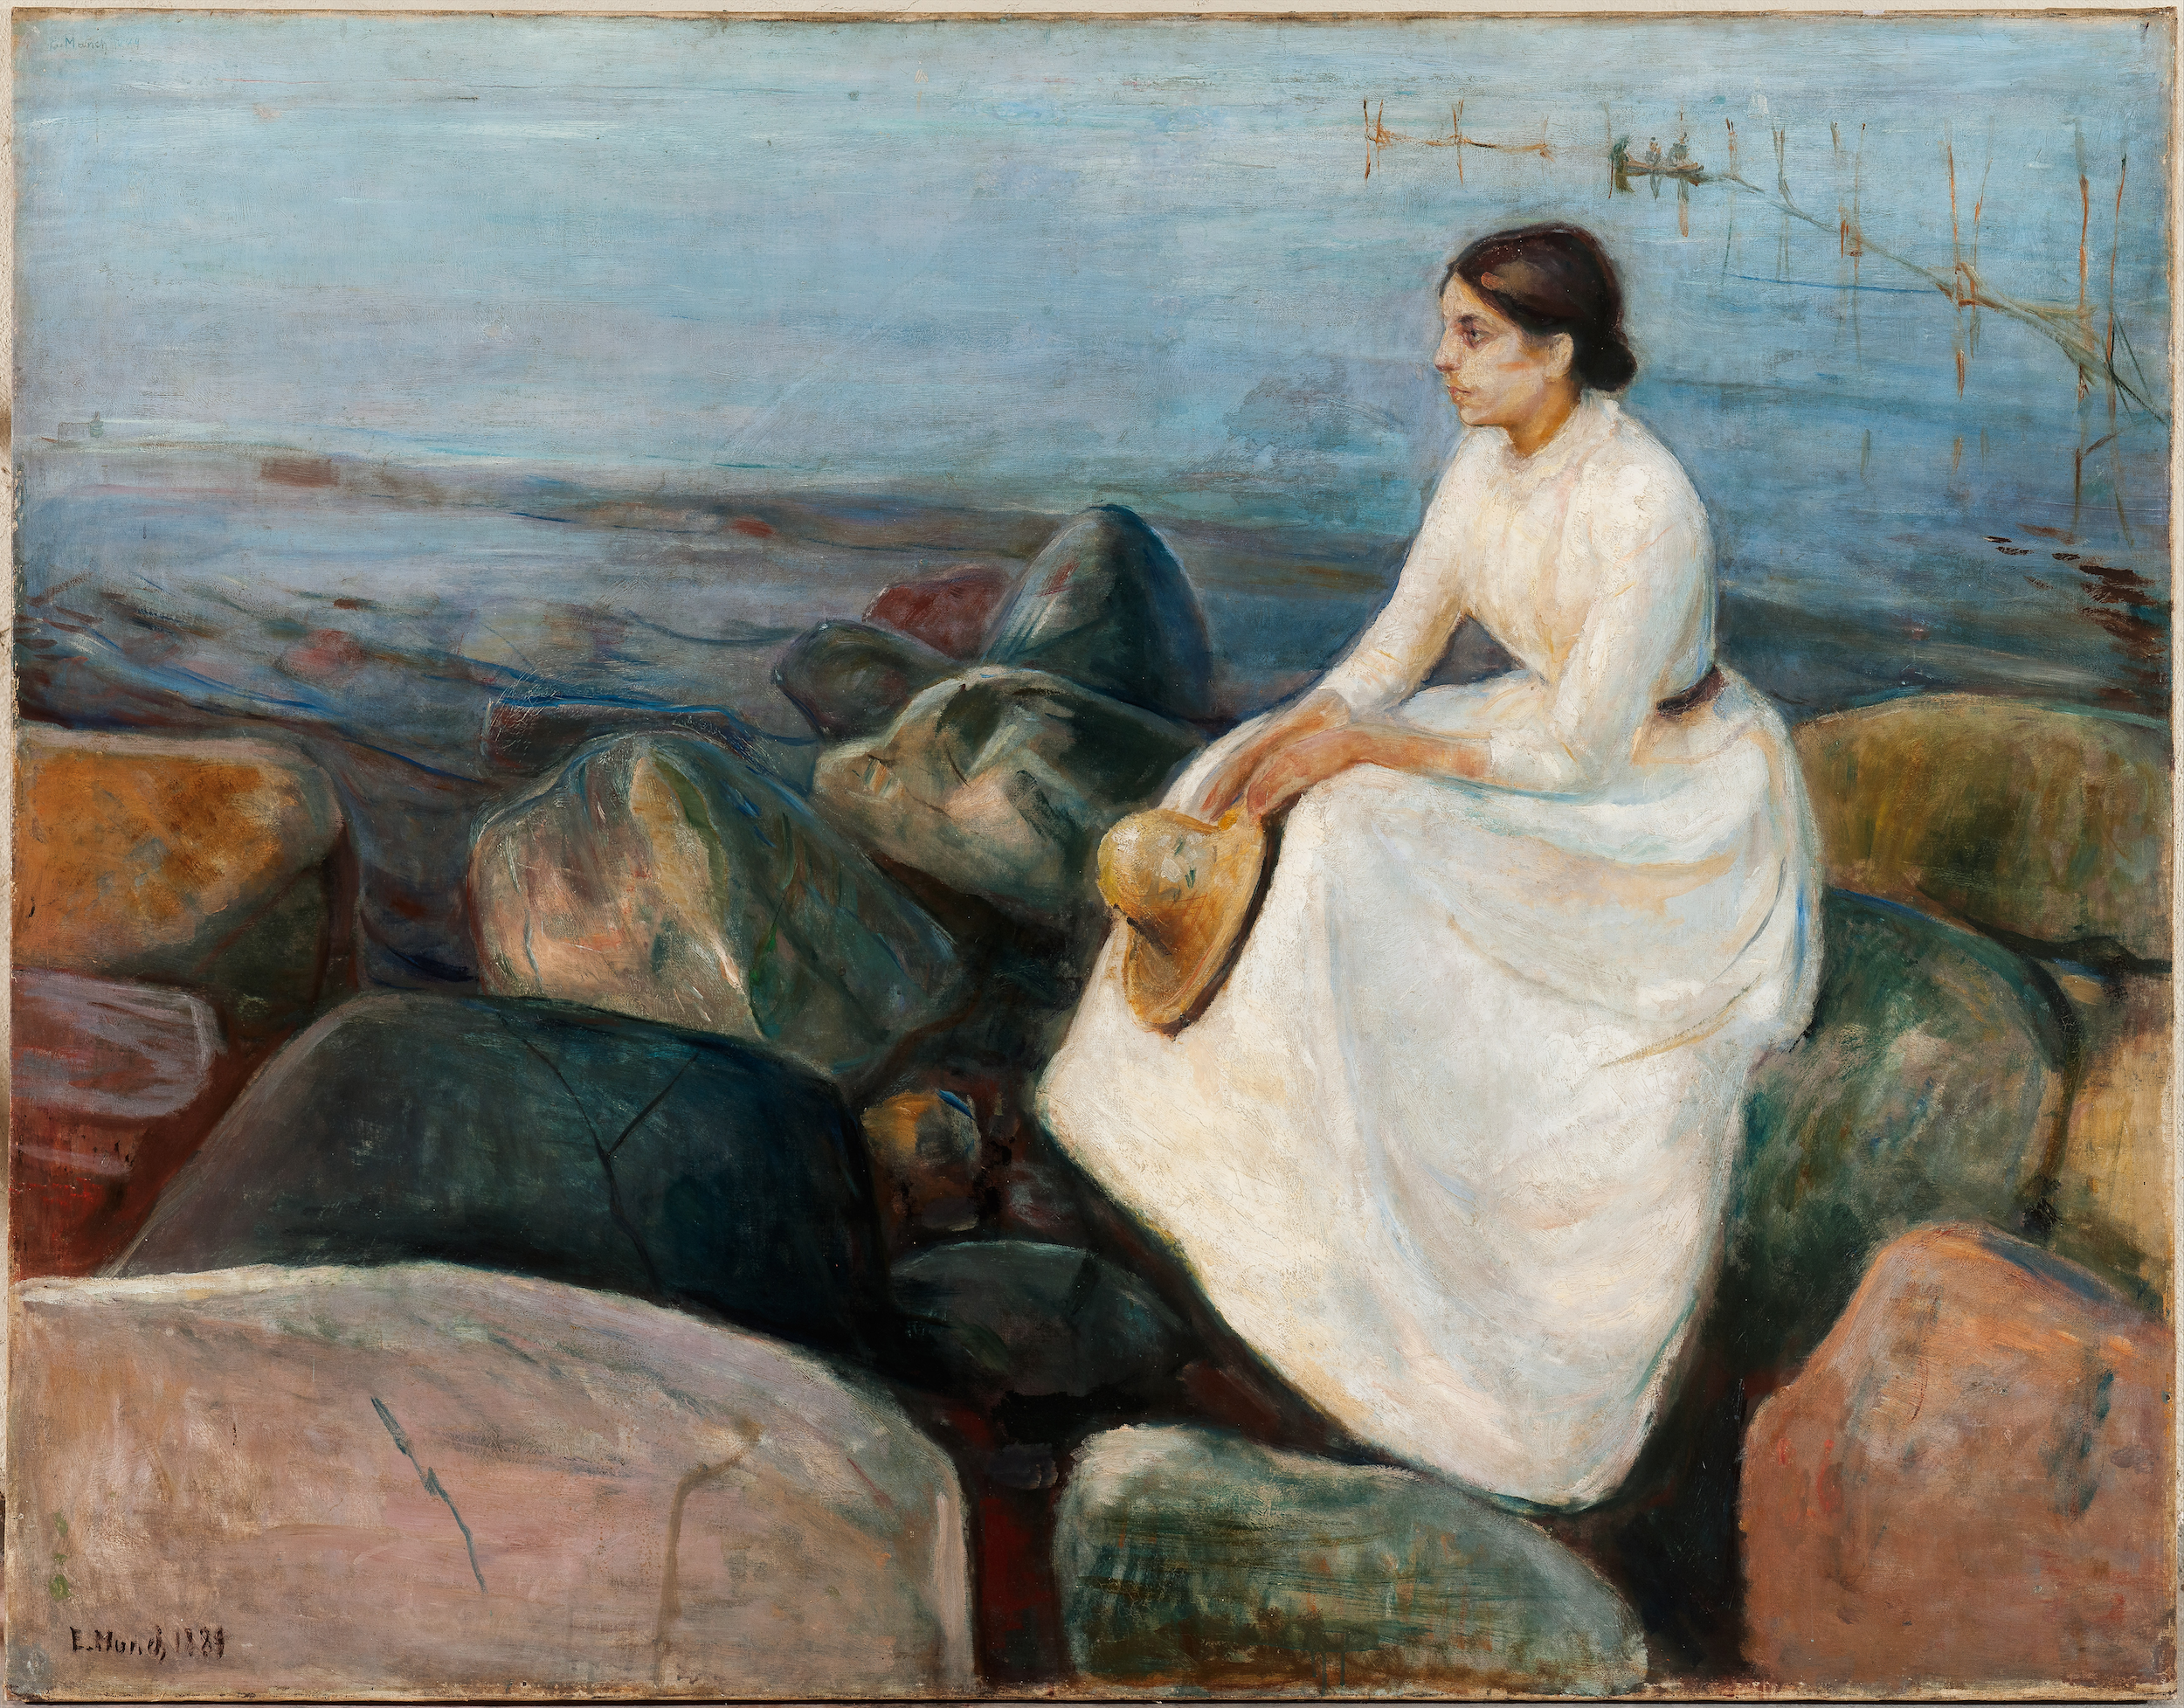 Letní noc, Inger na pláži by Edvard Munch - 1889 - 126,5 x 161,5 cm 